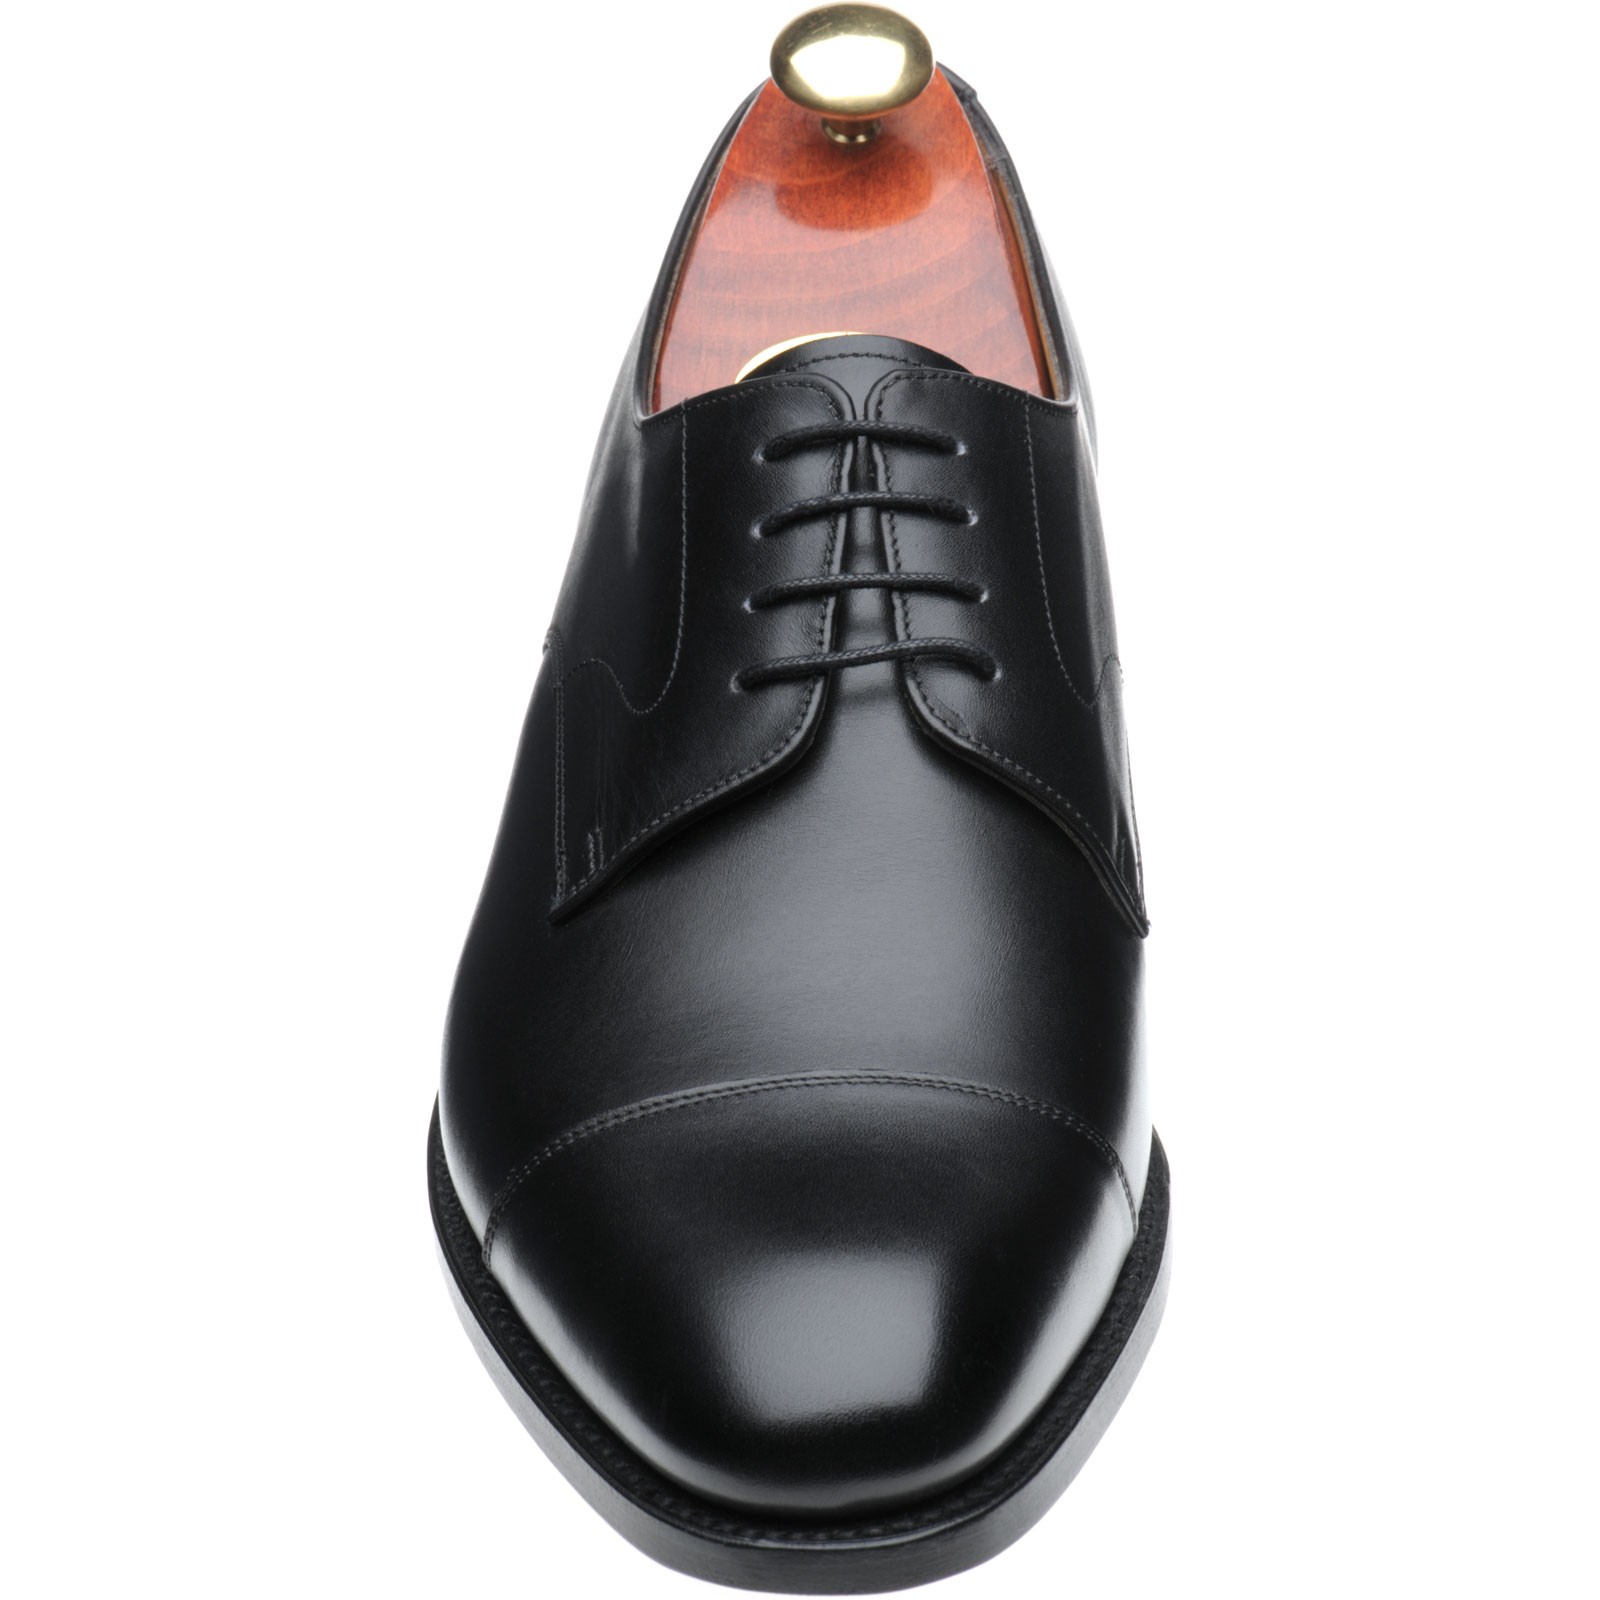 Barker shoes | Barker Professional | Morden in Black Calf at Herring Shoes